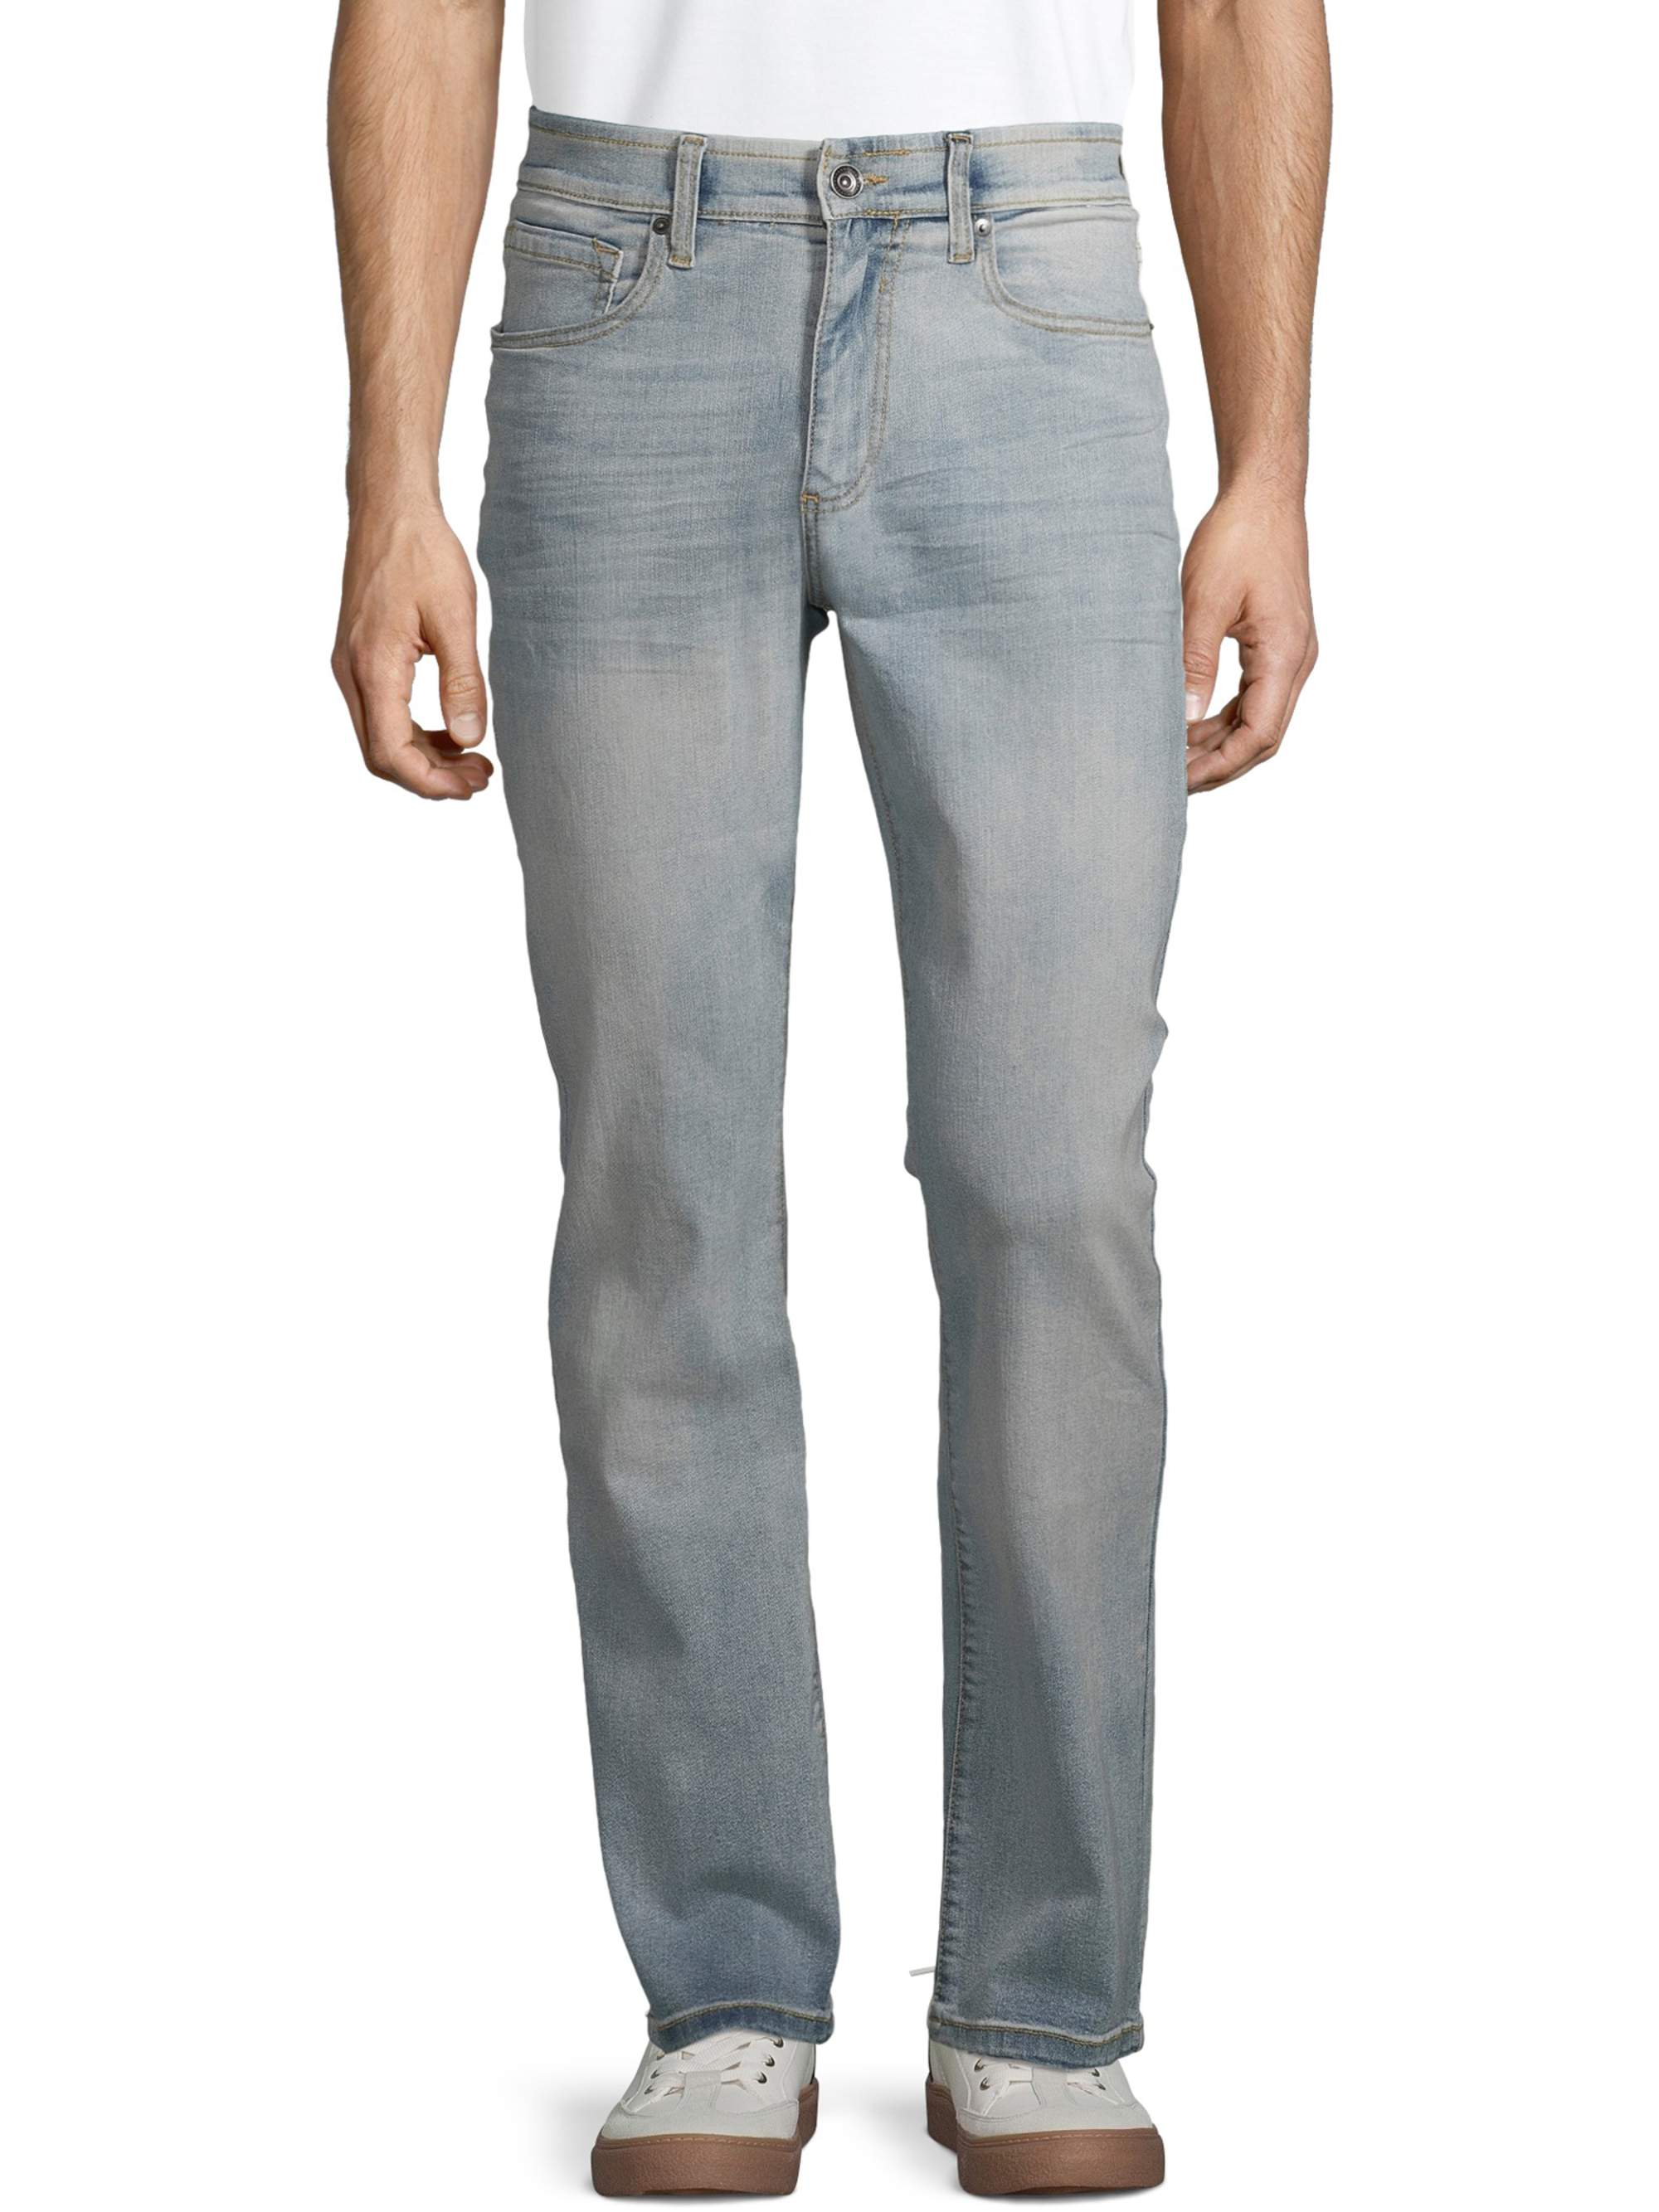 Lazer Men's Flex Denim Bootcut Jeans, Waist Sizes 29"-38", Bootcut Mens Jeans - image 1 of 4